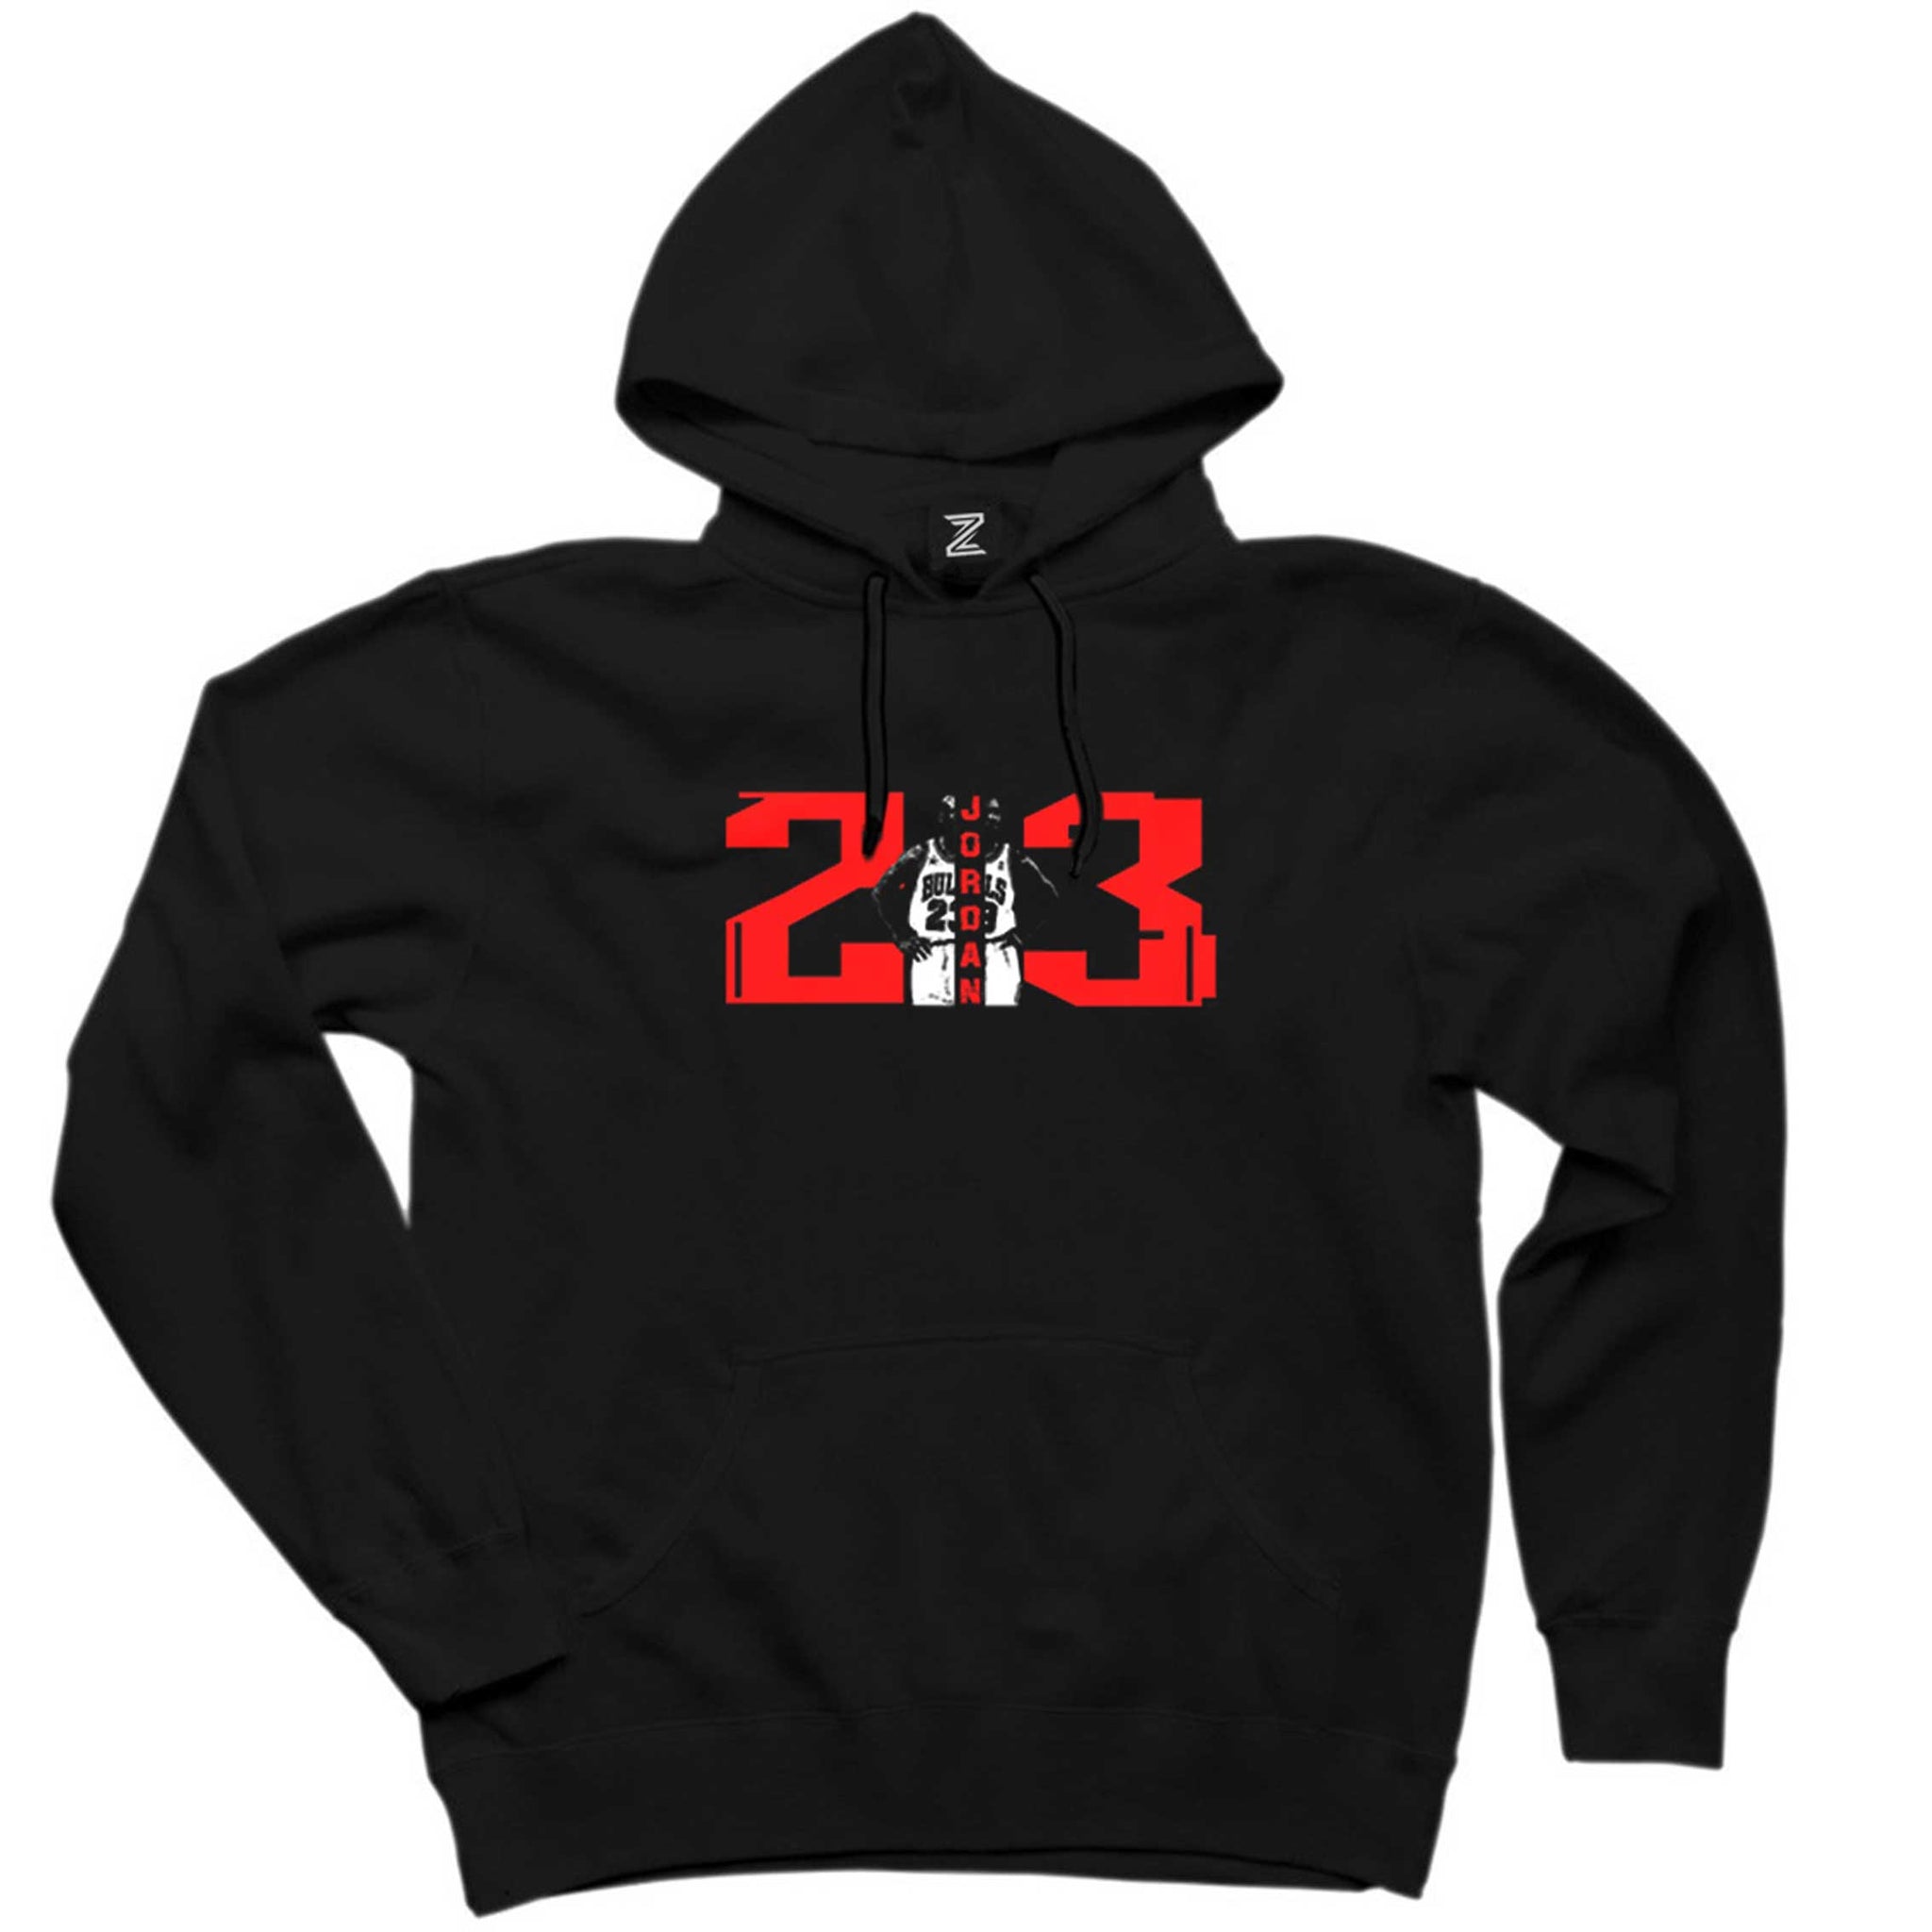 Michael Jordan 23 Siyah Kapşonlu Sweatshirt Hoodie